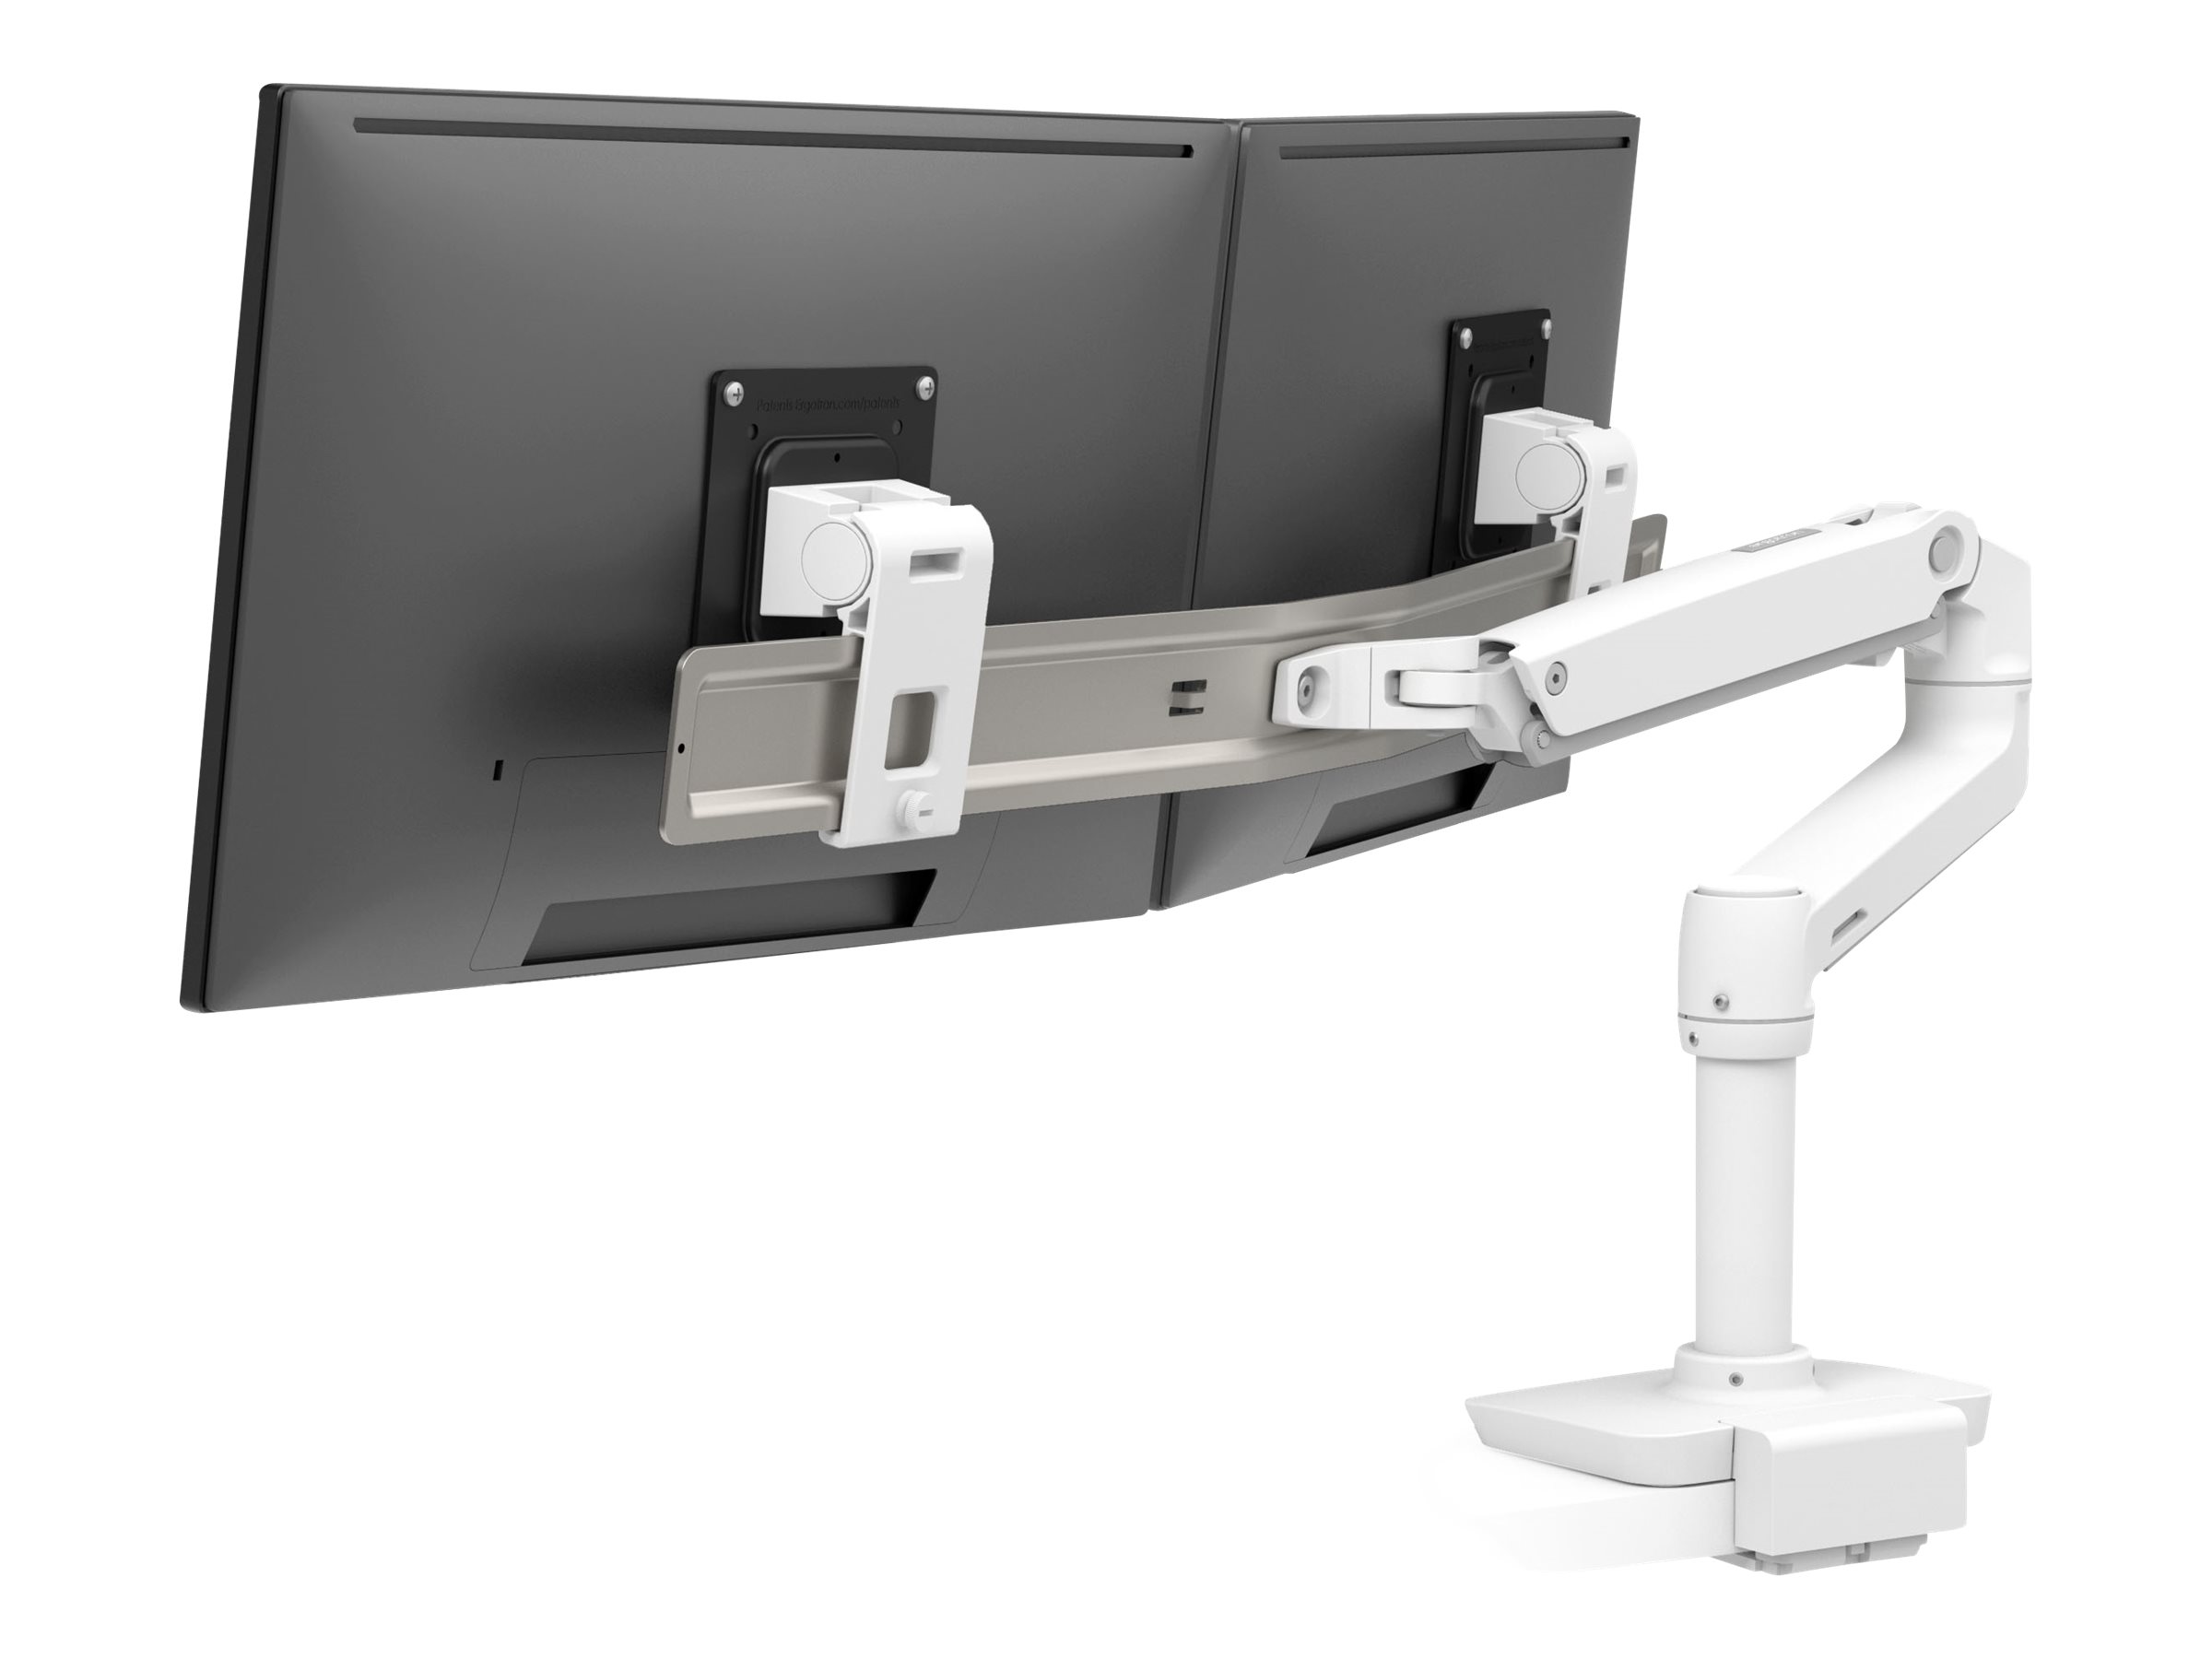 Ergotron LX Dual Direct - Kit de montage (bras articulé, poteau, 2 pivots, arc double affichage, base, pince en C à profil bas pour montage supérieur) - Technologie brevetée Constant Force - pour 2 écrans LCD - blanc - Taille d'écran : jusqu'à 25 pouces - montrable sur bureau - 45-609-216 - Accessoires pour écran